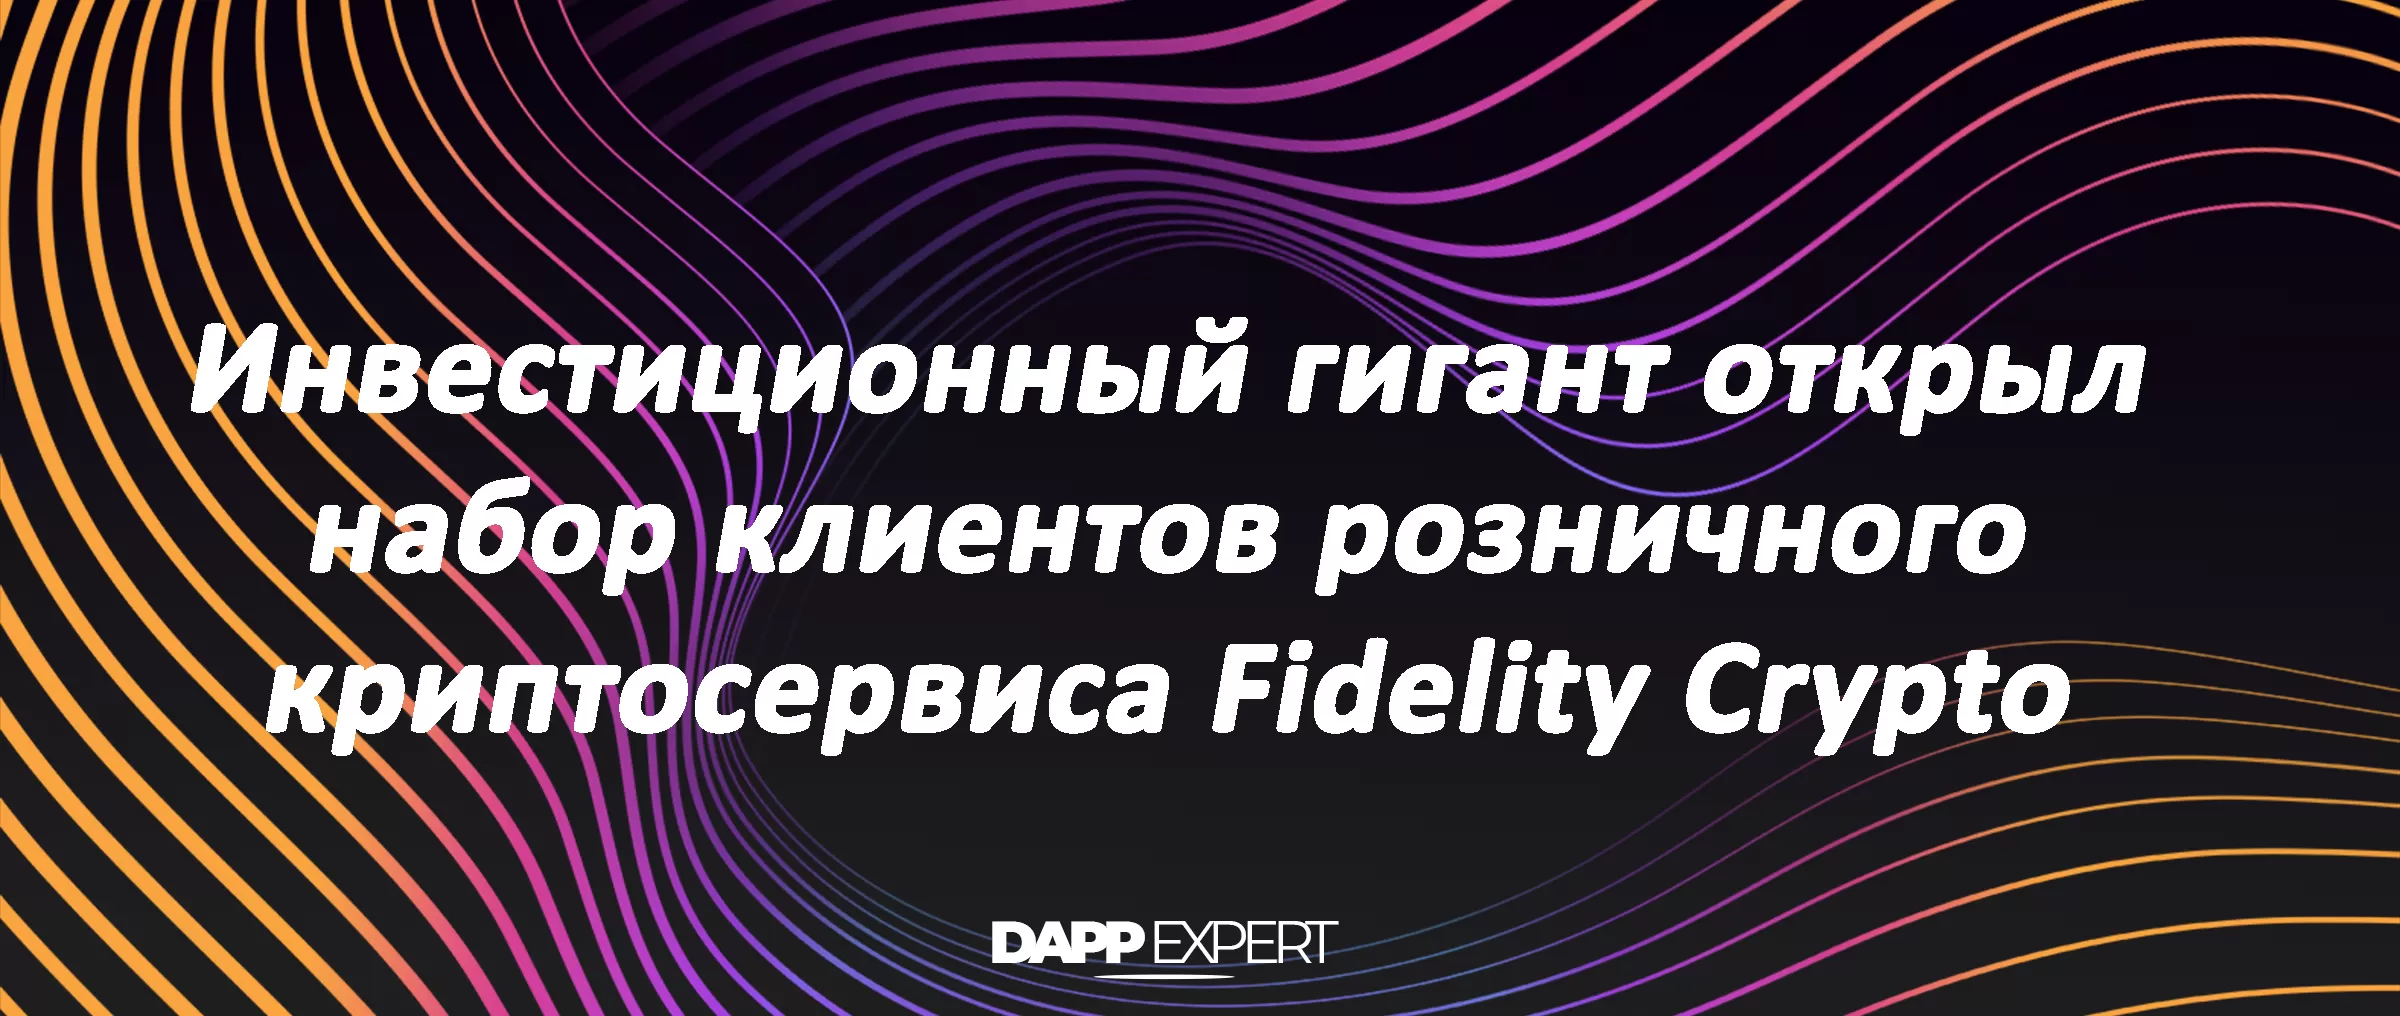 Инвестиционный гигант открыл набор клиентов розничного криптосервиса Fidelity Crypto